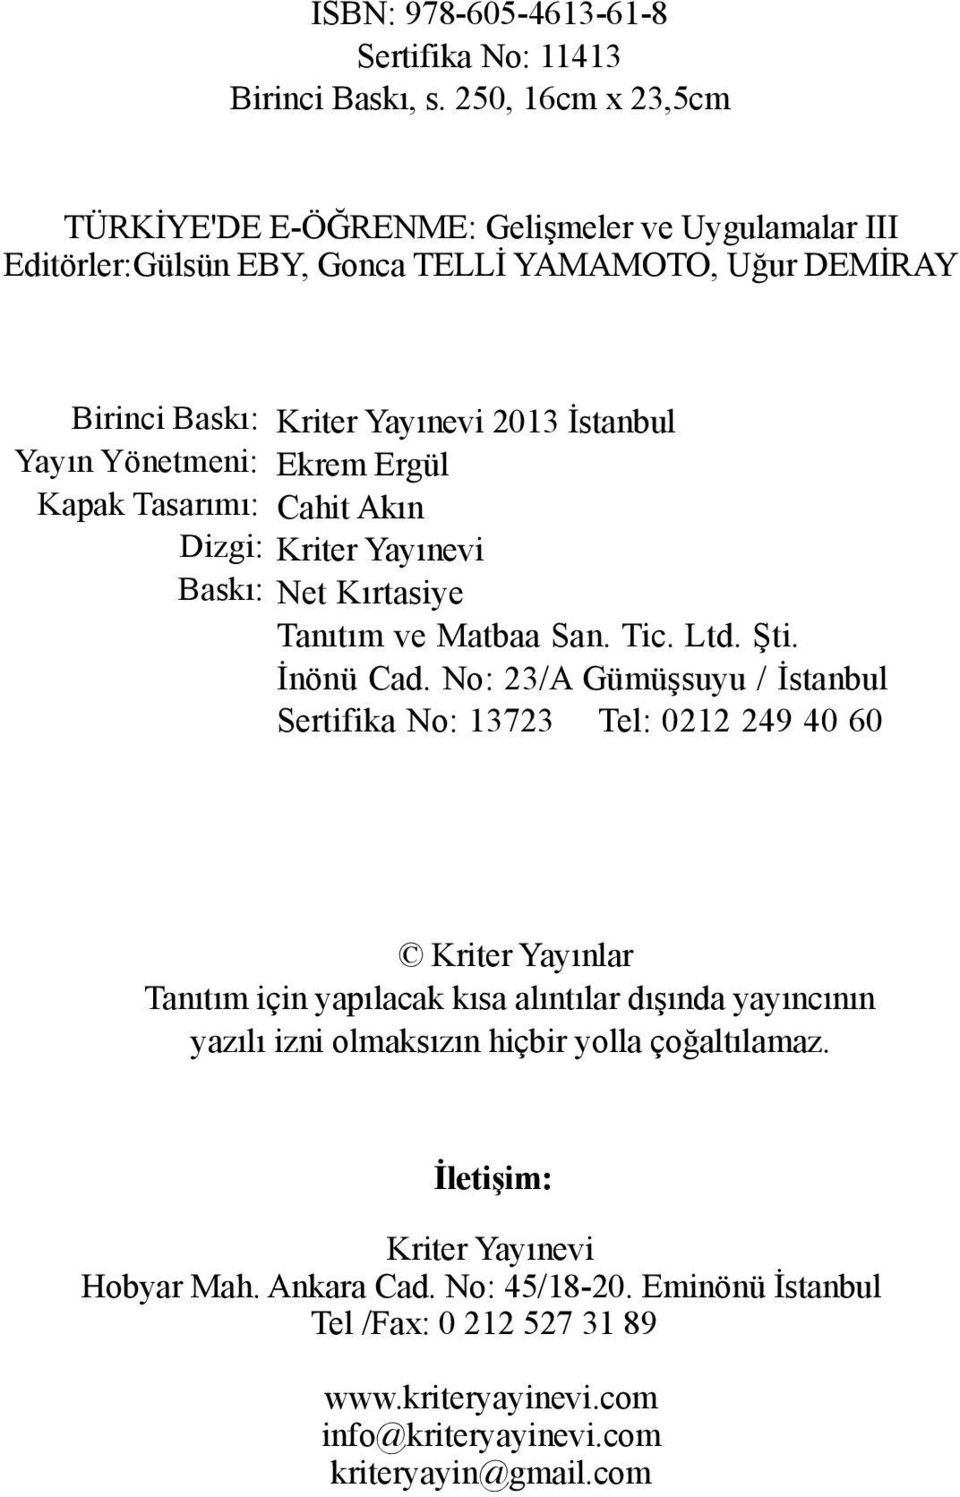 Yönetmeni: Ekrem Ergül Kapak Tasarımı: Cahit Akın Dizgi: Kriter Yayınevi Baskı: Net Kırtasiye Tanıtım ve Matbaa San. Tic. Ltd. Şti. İnönü Cad.